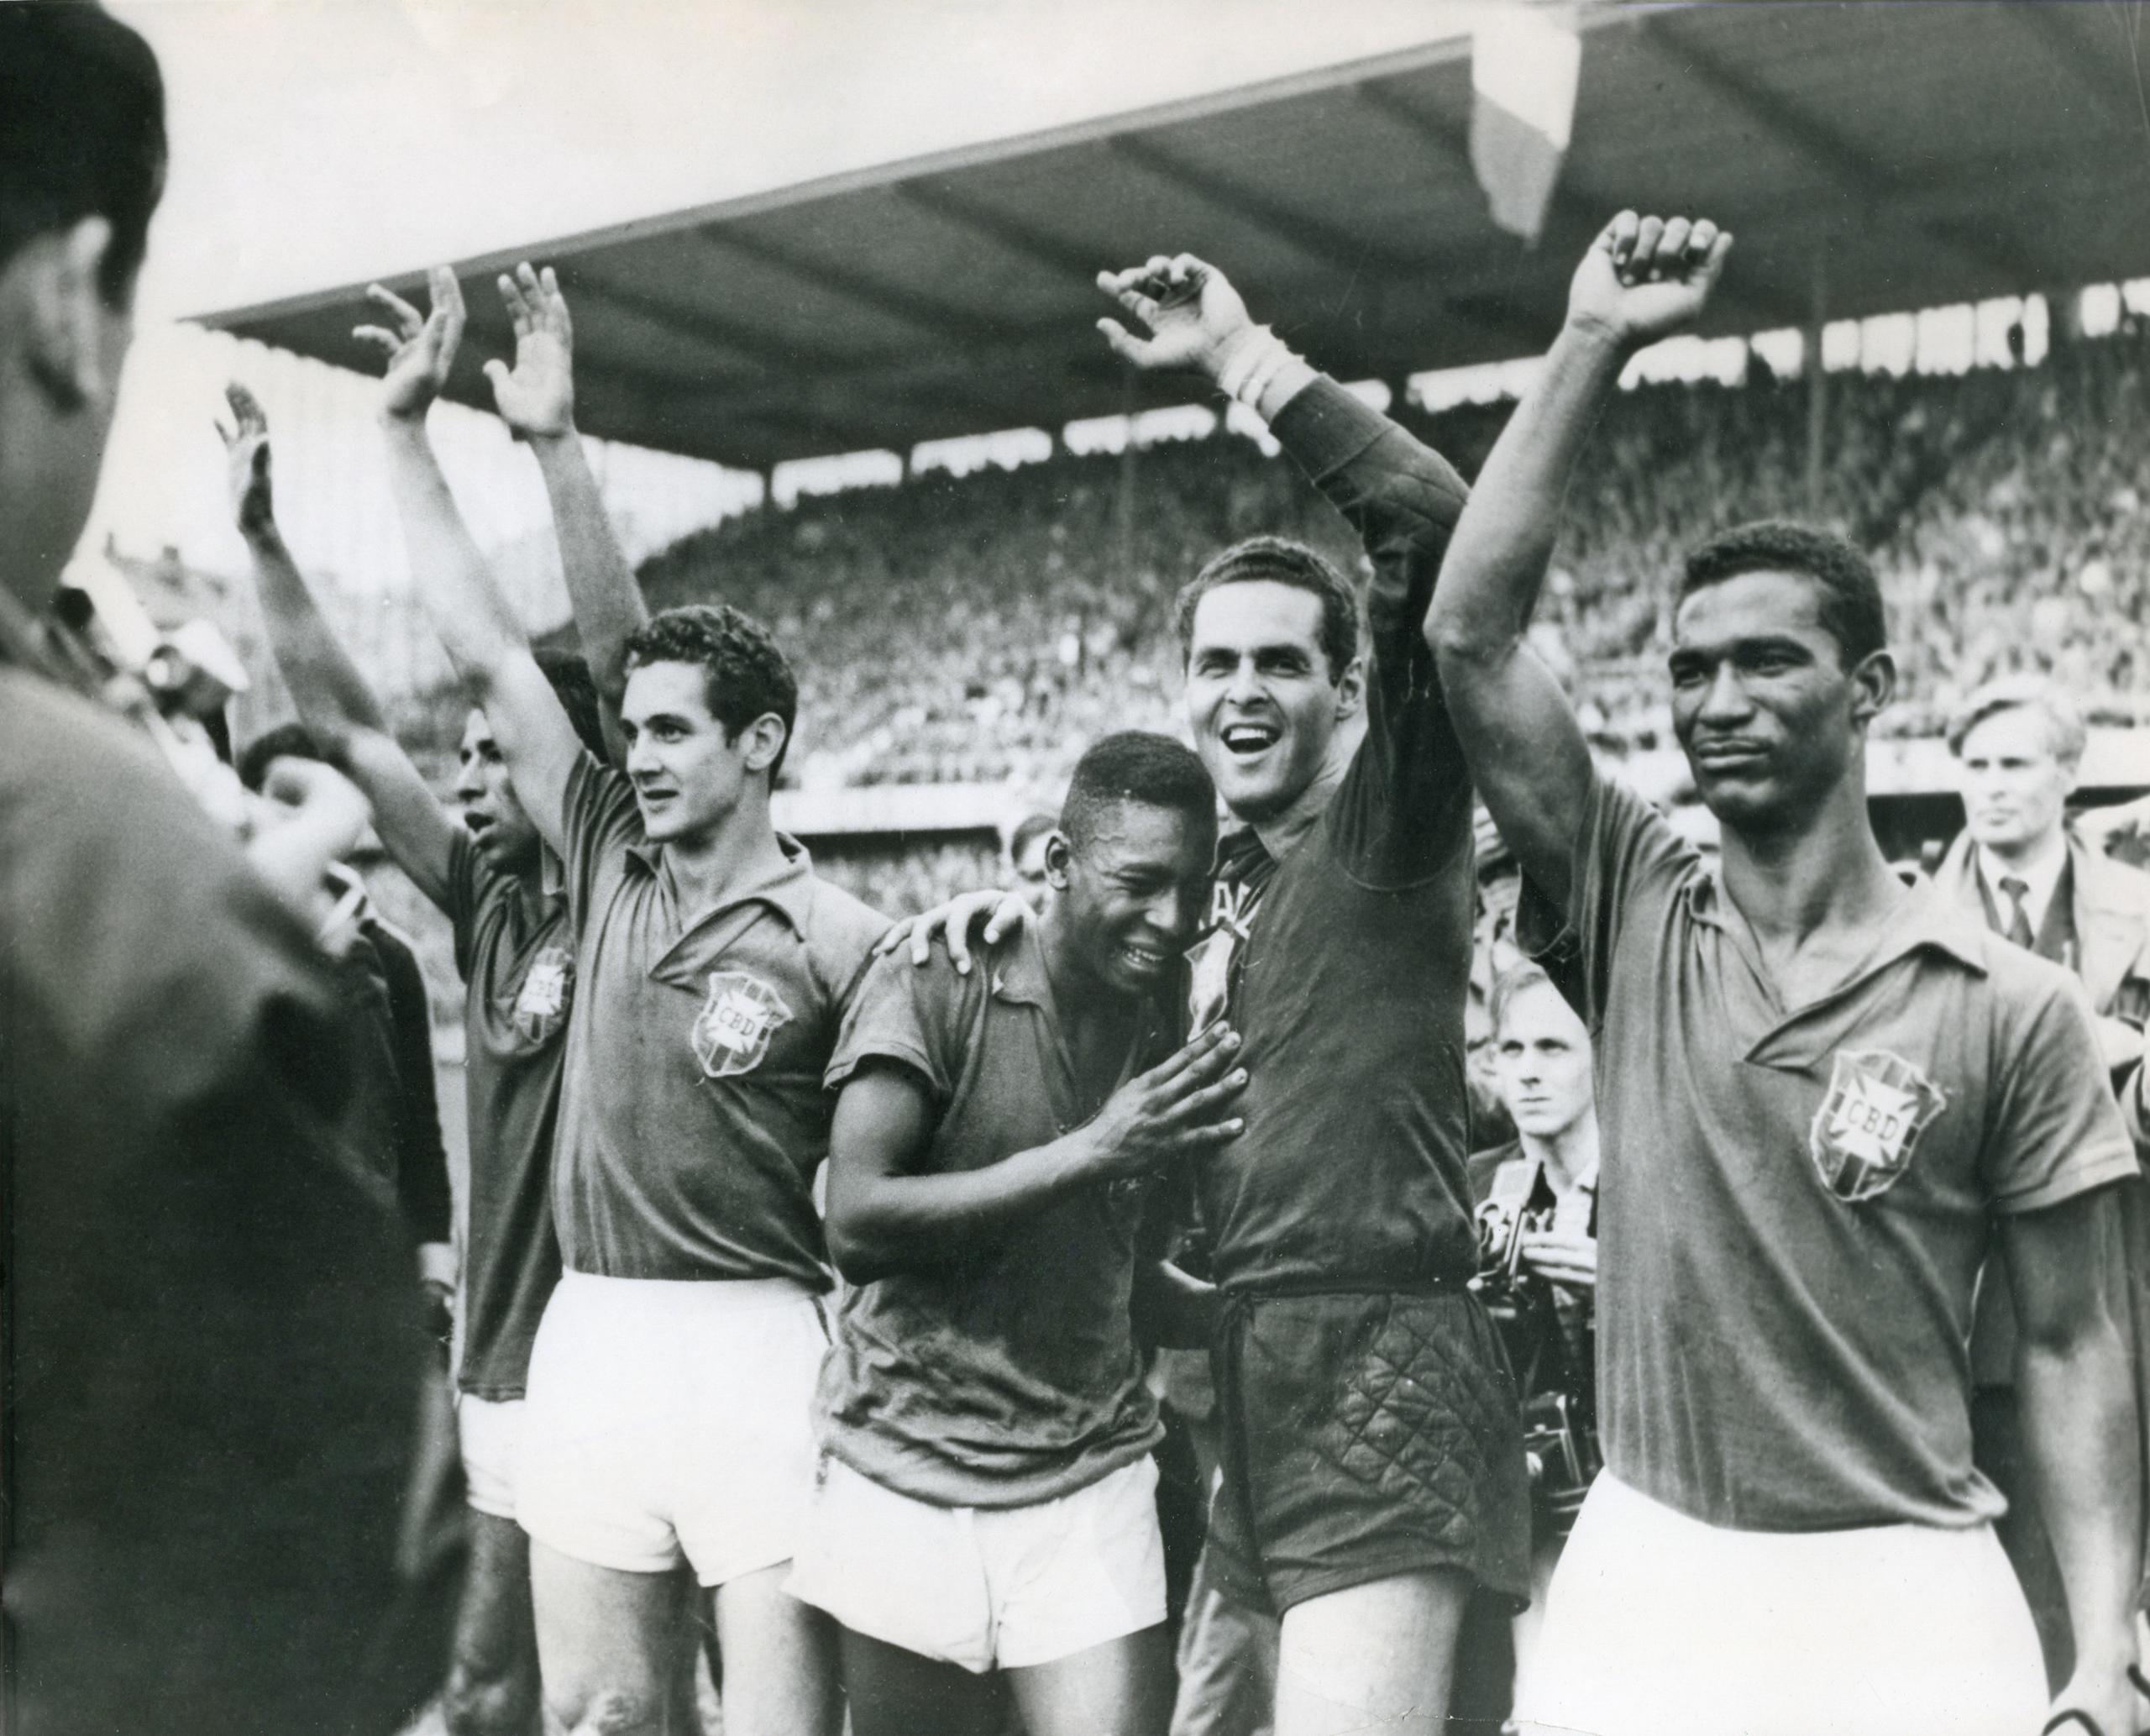 Pelé, de 17 años, llora en el hombro del arquero Gylmar dos Santos, luego de la victoria por 5-2 sobre Suecia en la final mundialista, el 29 de junio de 1958, en Estocolmo.